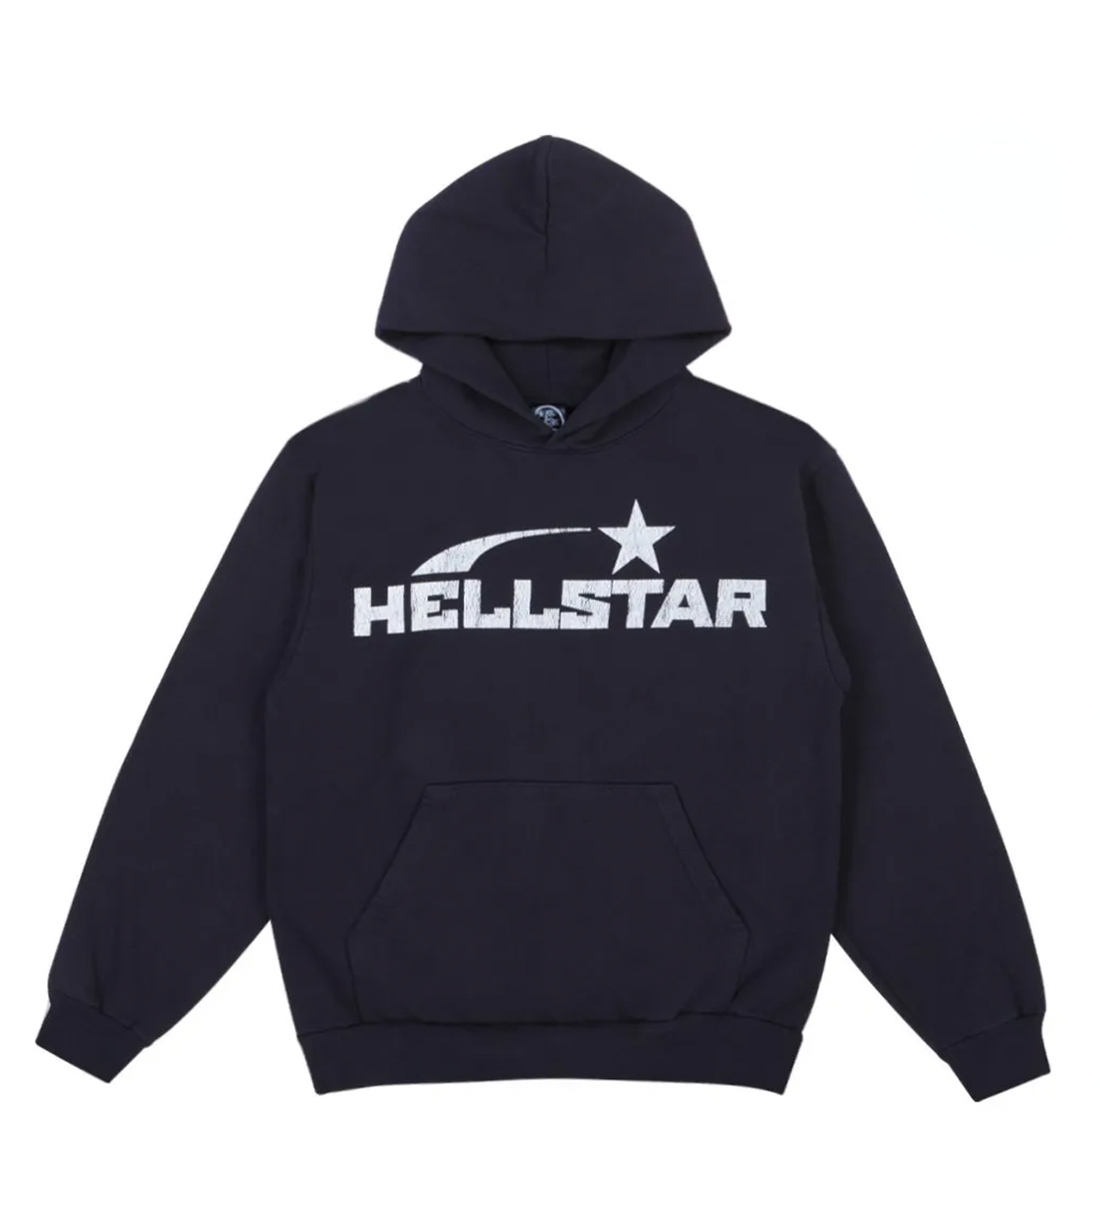 Hellstar Hoodies, Shop Hellstar Clothing & Hoodies